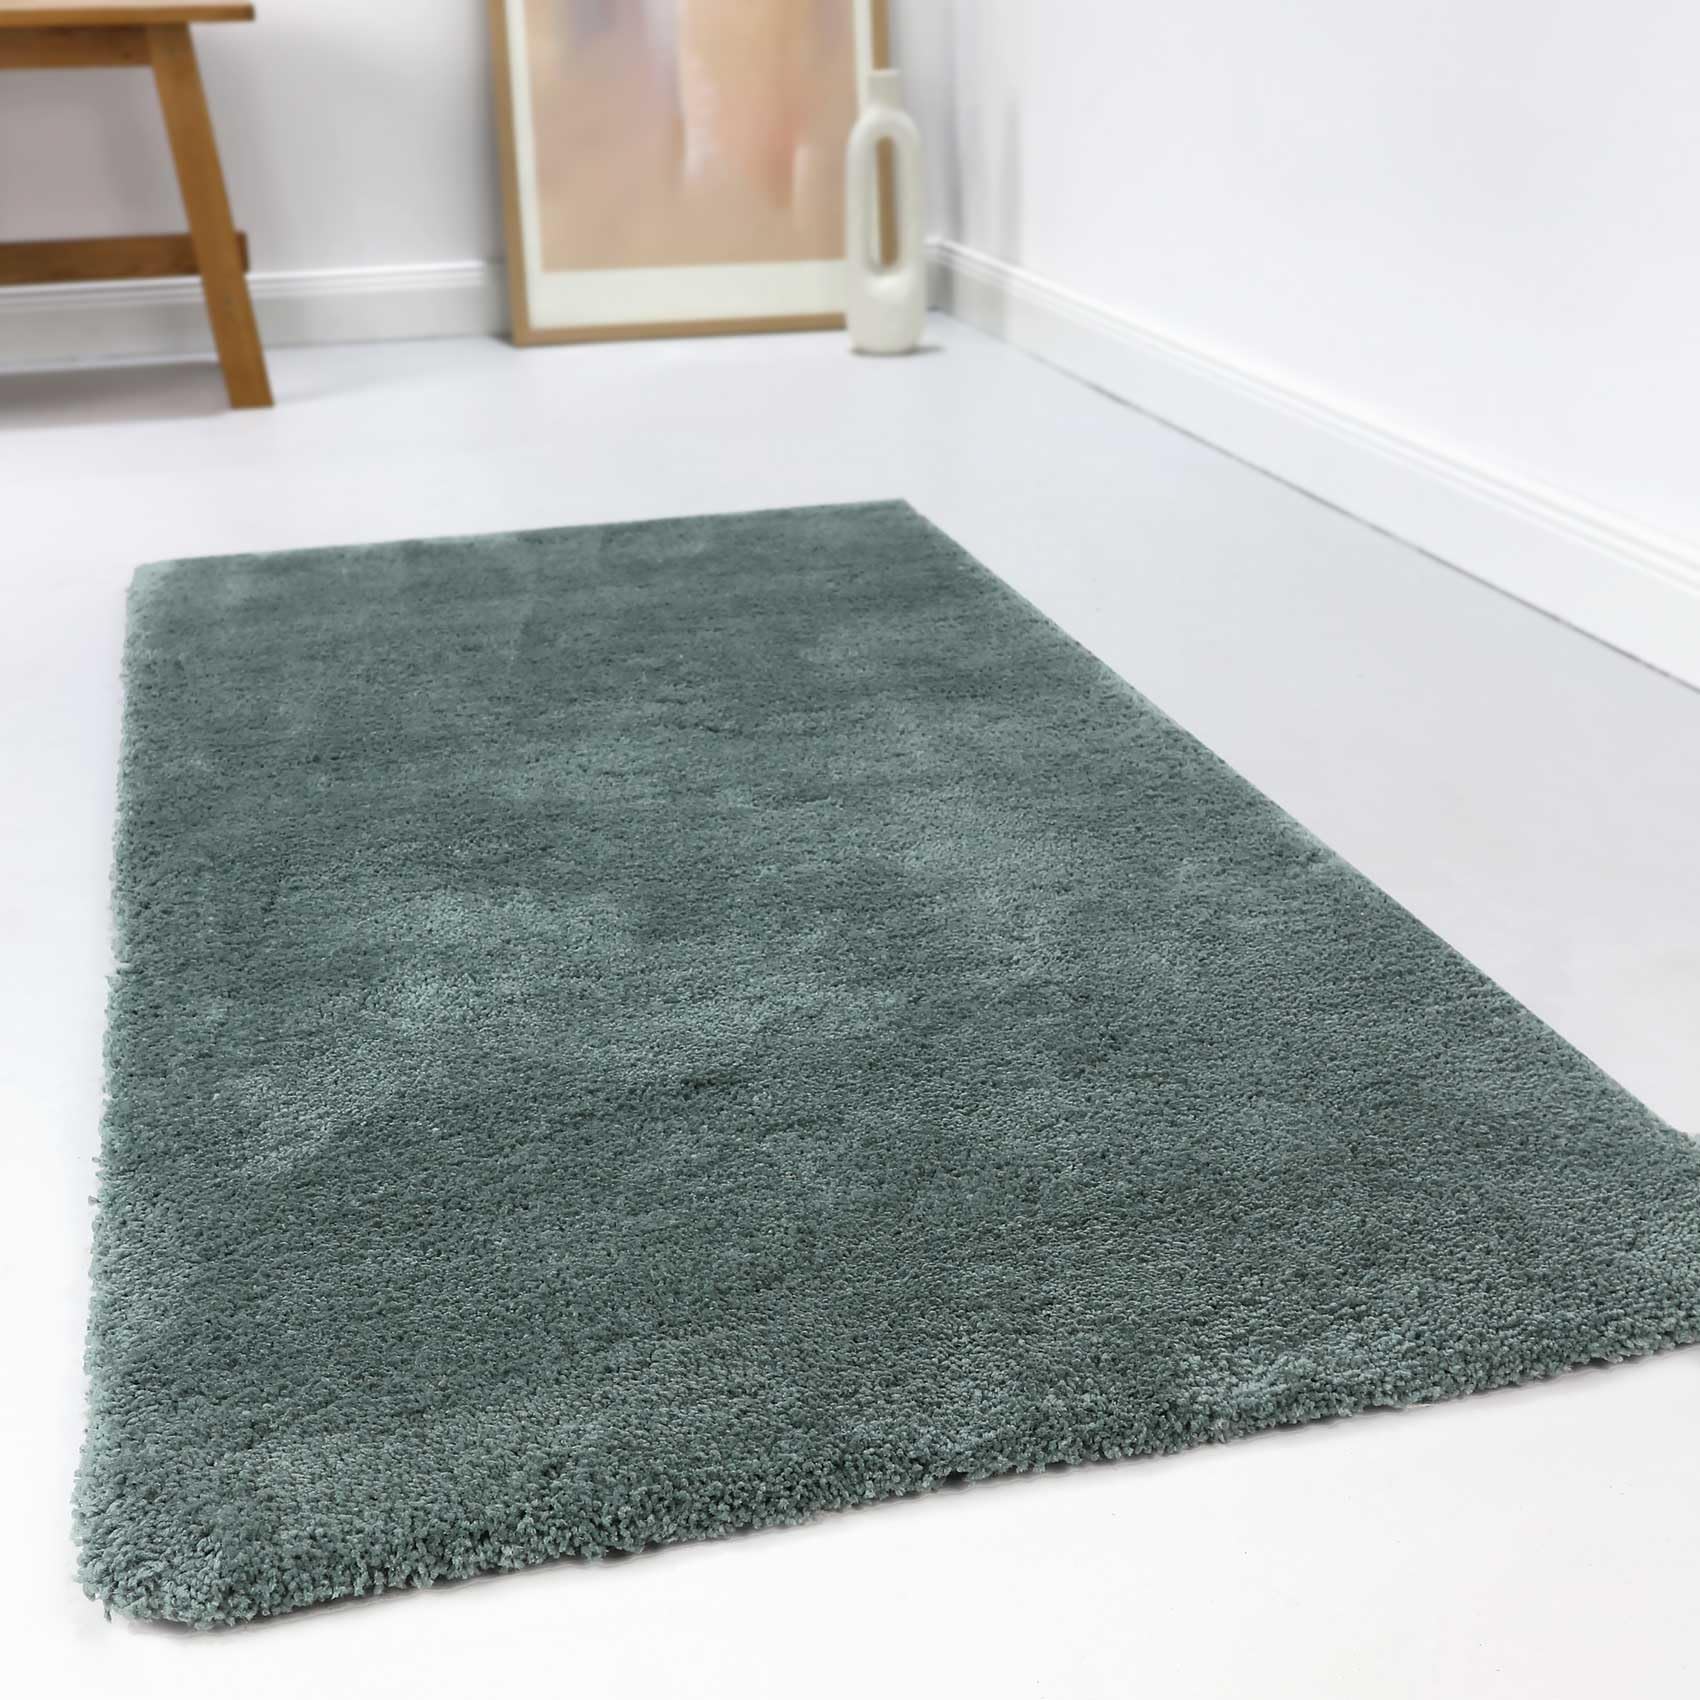 Wecon Home Kuschelig weicher Esprit Hochflor Teppich, bestens geeignet fürs Wohnzimmer, Schlafzimmer und Kinderzimmer RELAXX (130 x 190 cm, grün grau)